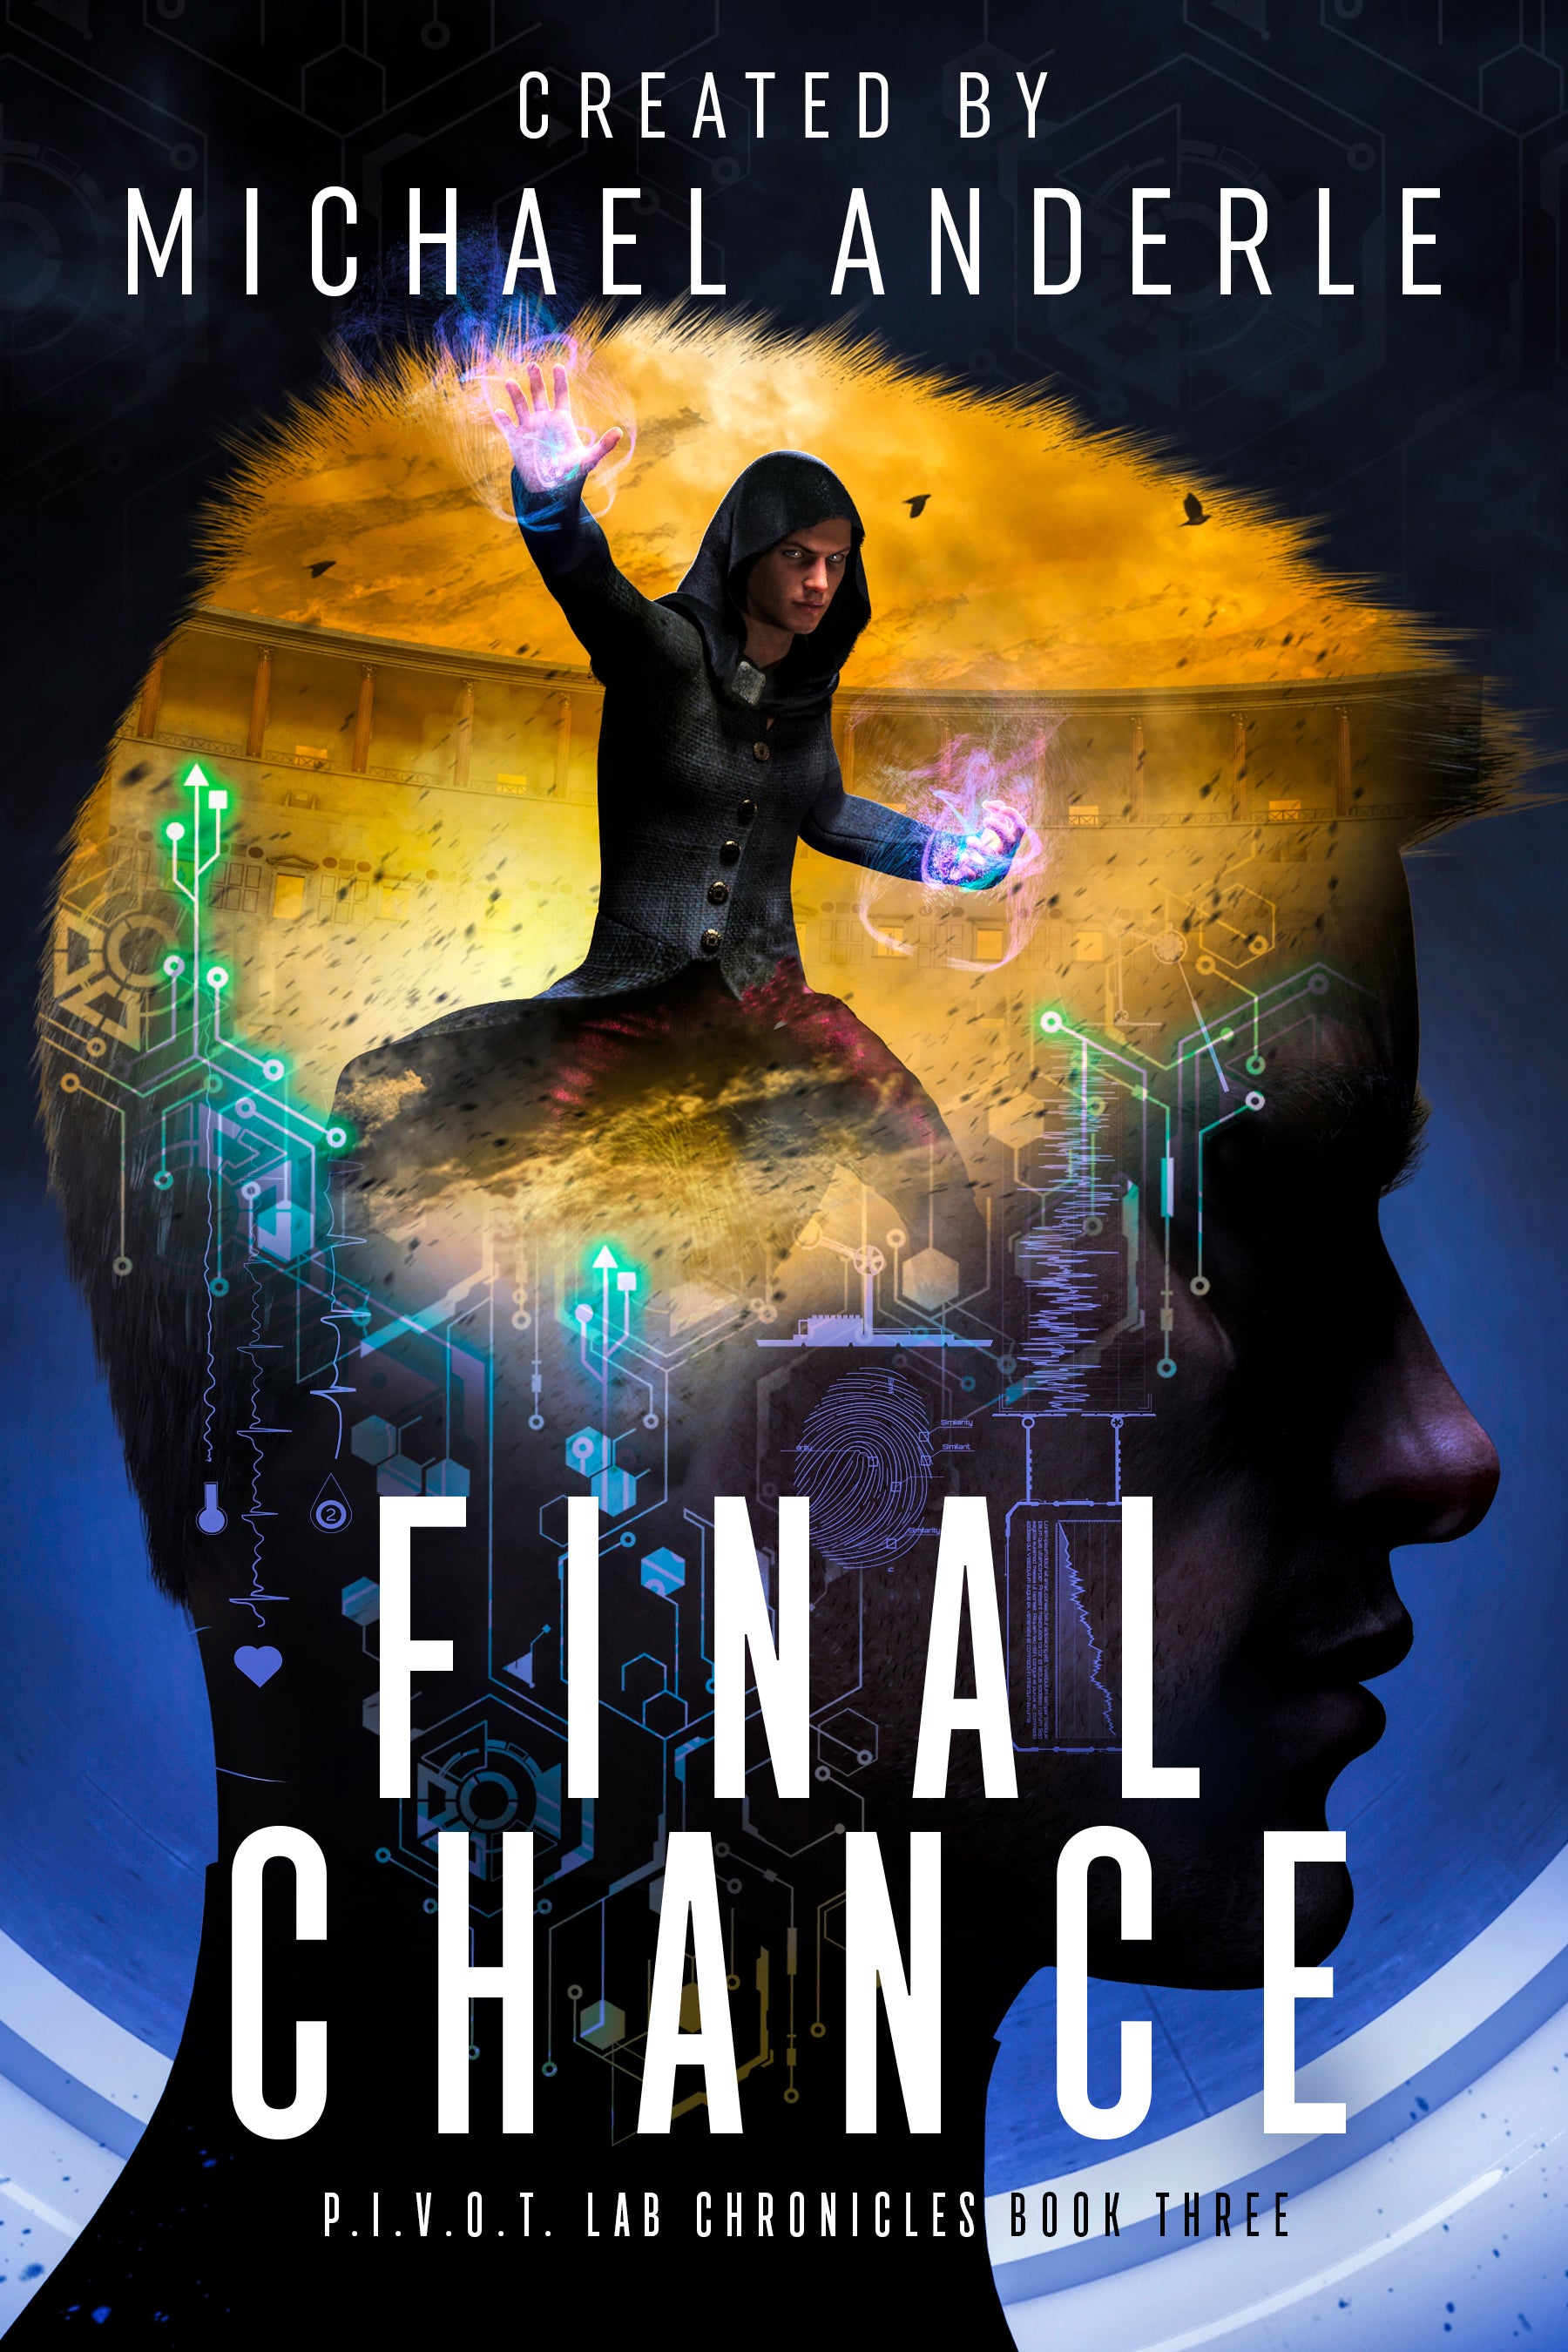 Book 3: Final Chance